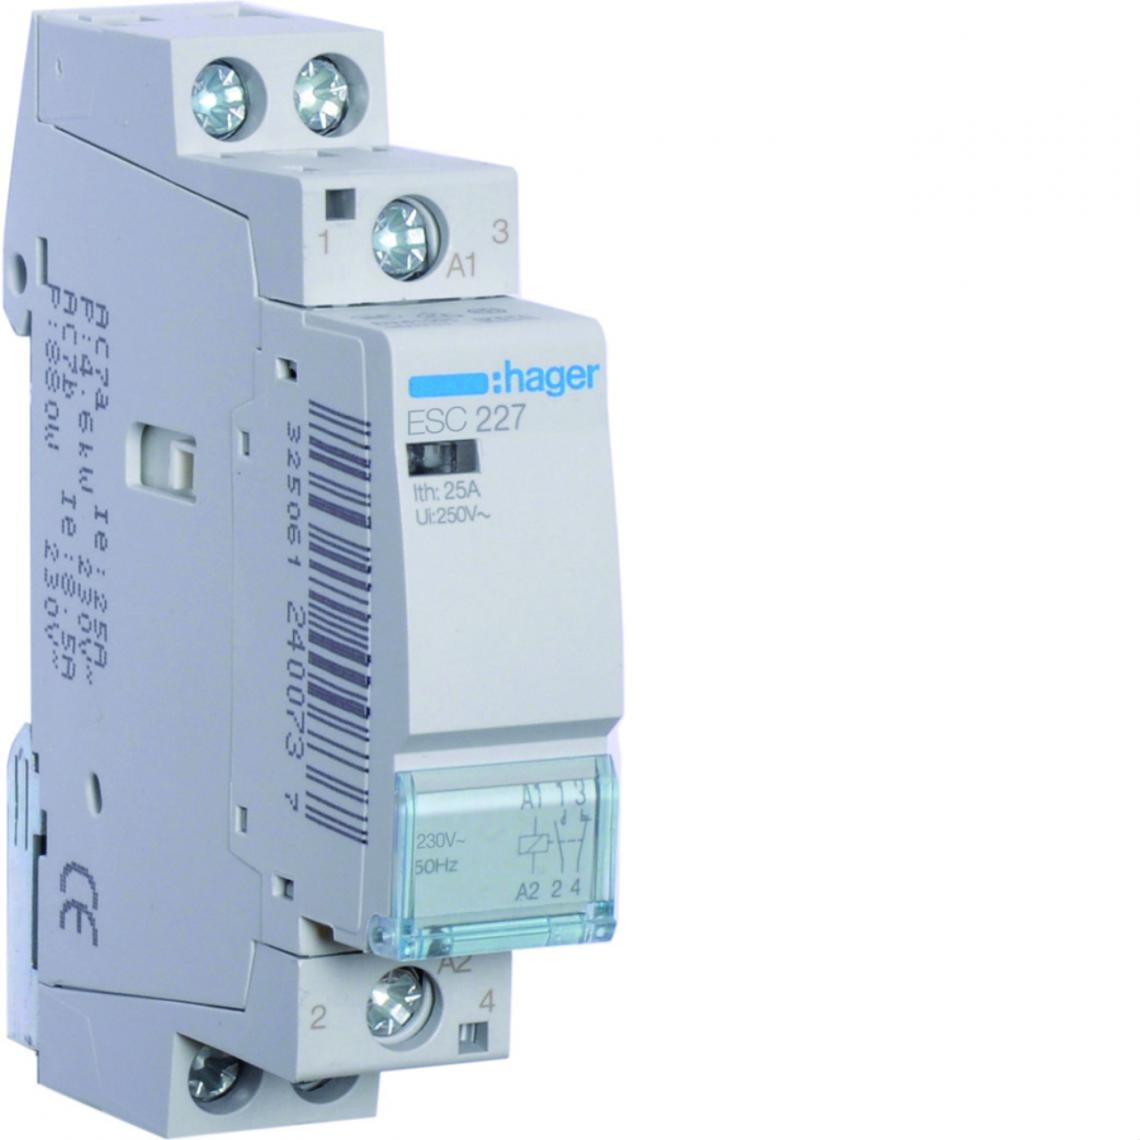 Hager - contacteur modulaire - 25a - 1 contact nf + 1 contact no - 230v - hager esc227 - Télérupteurs, minuteries et horloges